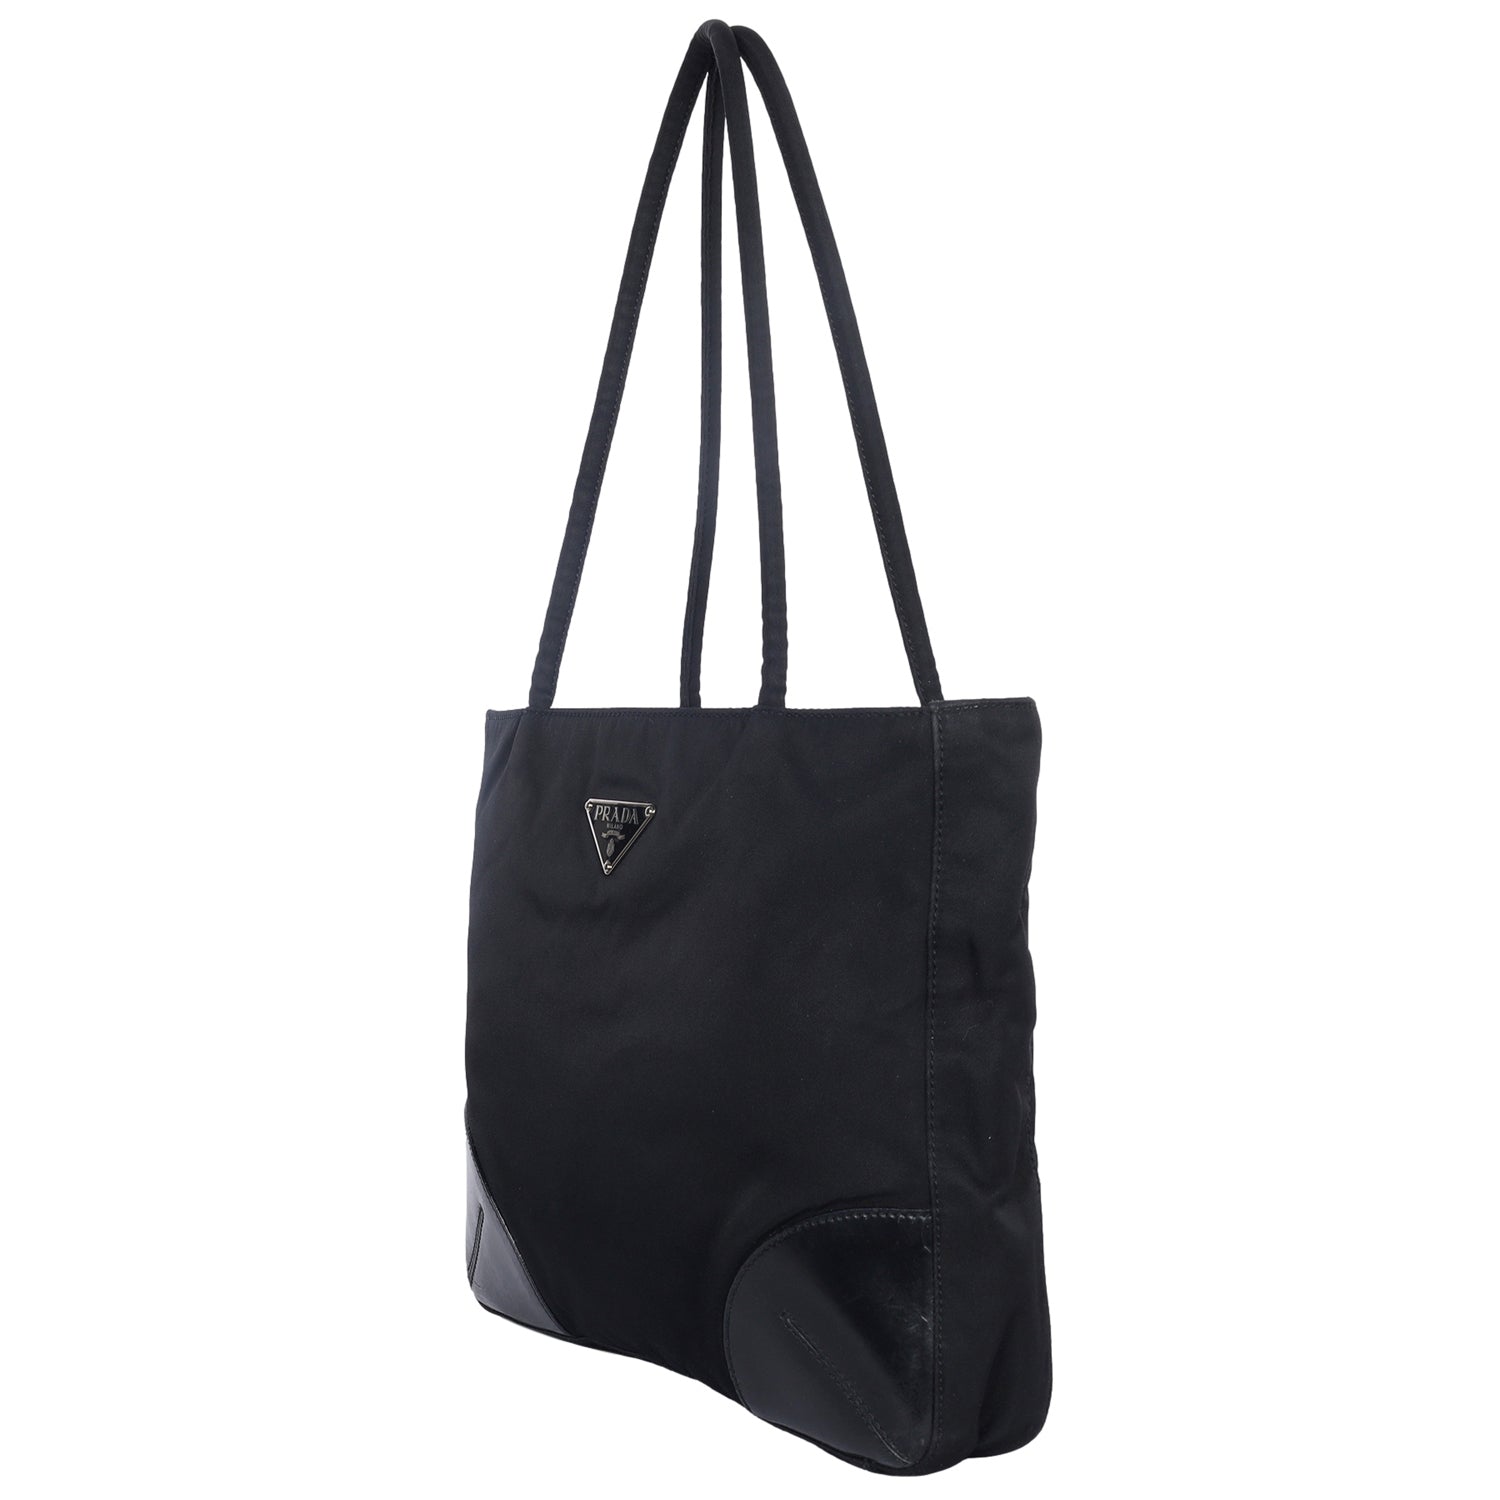 Authentic Guarantee - Prada Tessuto Tote Bag